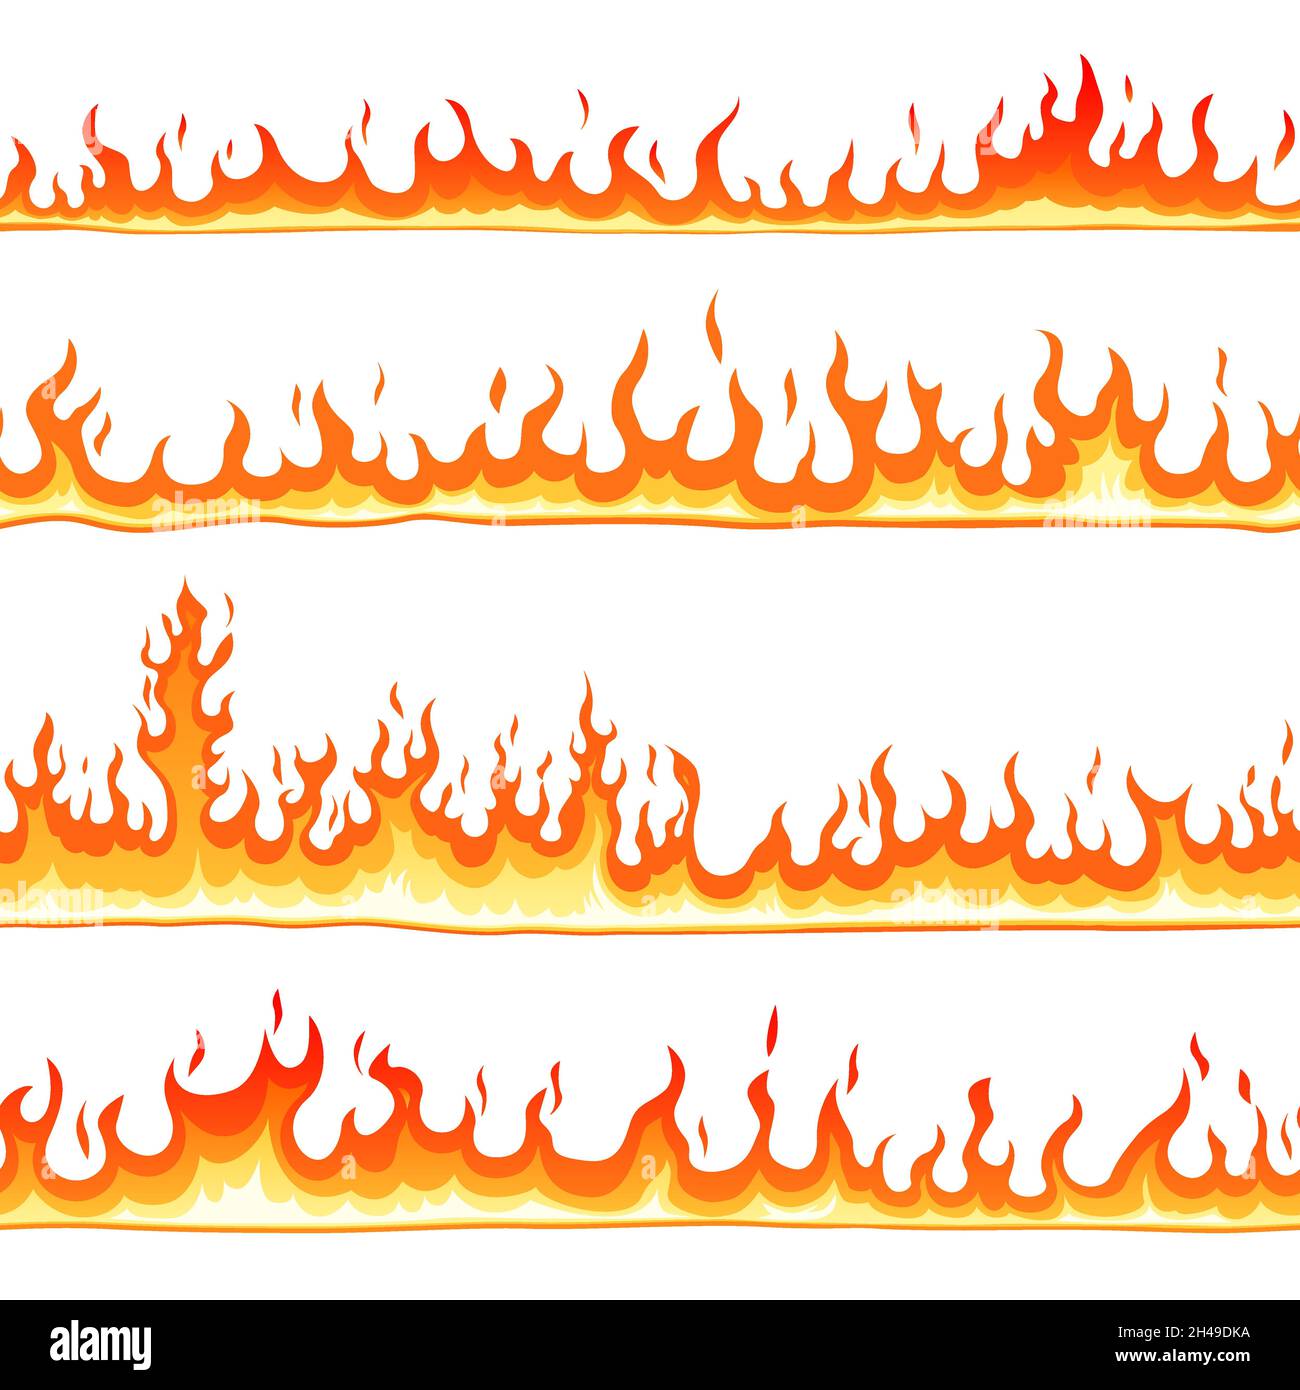 Feuer nahtloses Muster. Cartoon-Flammen, heiße Flammen Grenzen Linien. Höllenelemente, isoliertes Lagerfeuer oder Feuer. Flacher Comic flaming letzten Vektor Hintergrund Stock Vektor